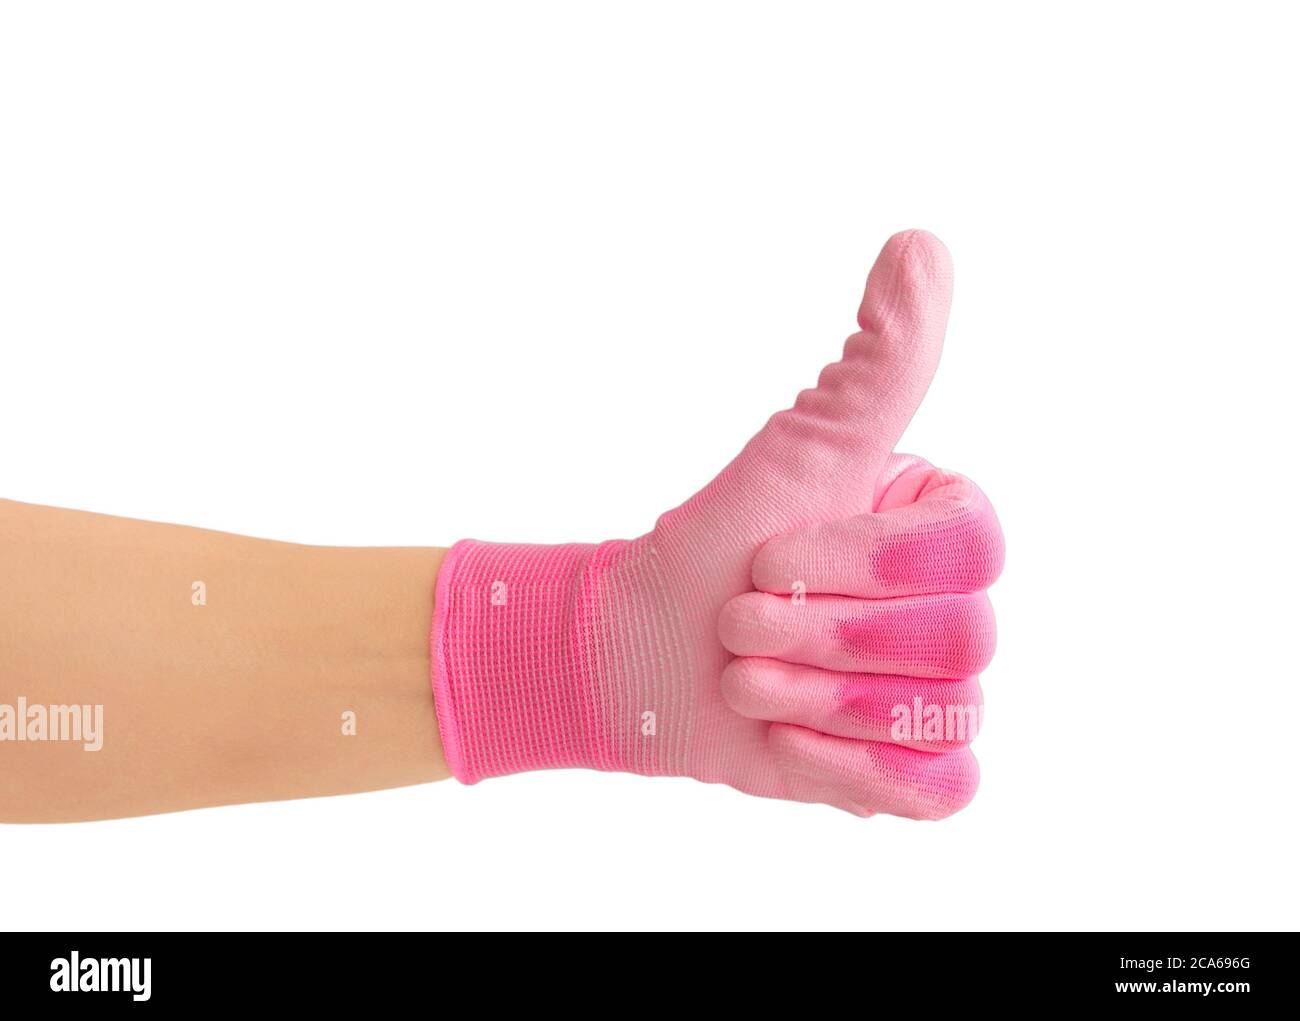 Vista de cerca de la mano de la persona que lleva un guante de trabajo de jardinería rosa de color vibrante y mostrando el pulgar hacia arriba como un gesto. Aislado sobre fondo blanco. Foto de stock